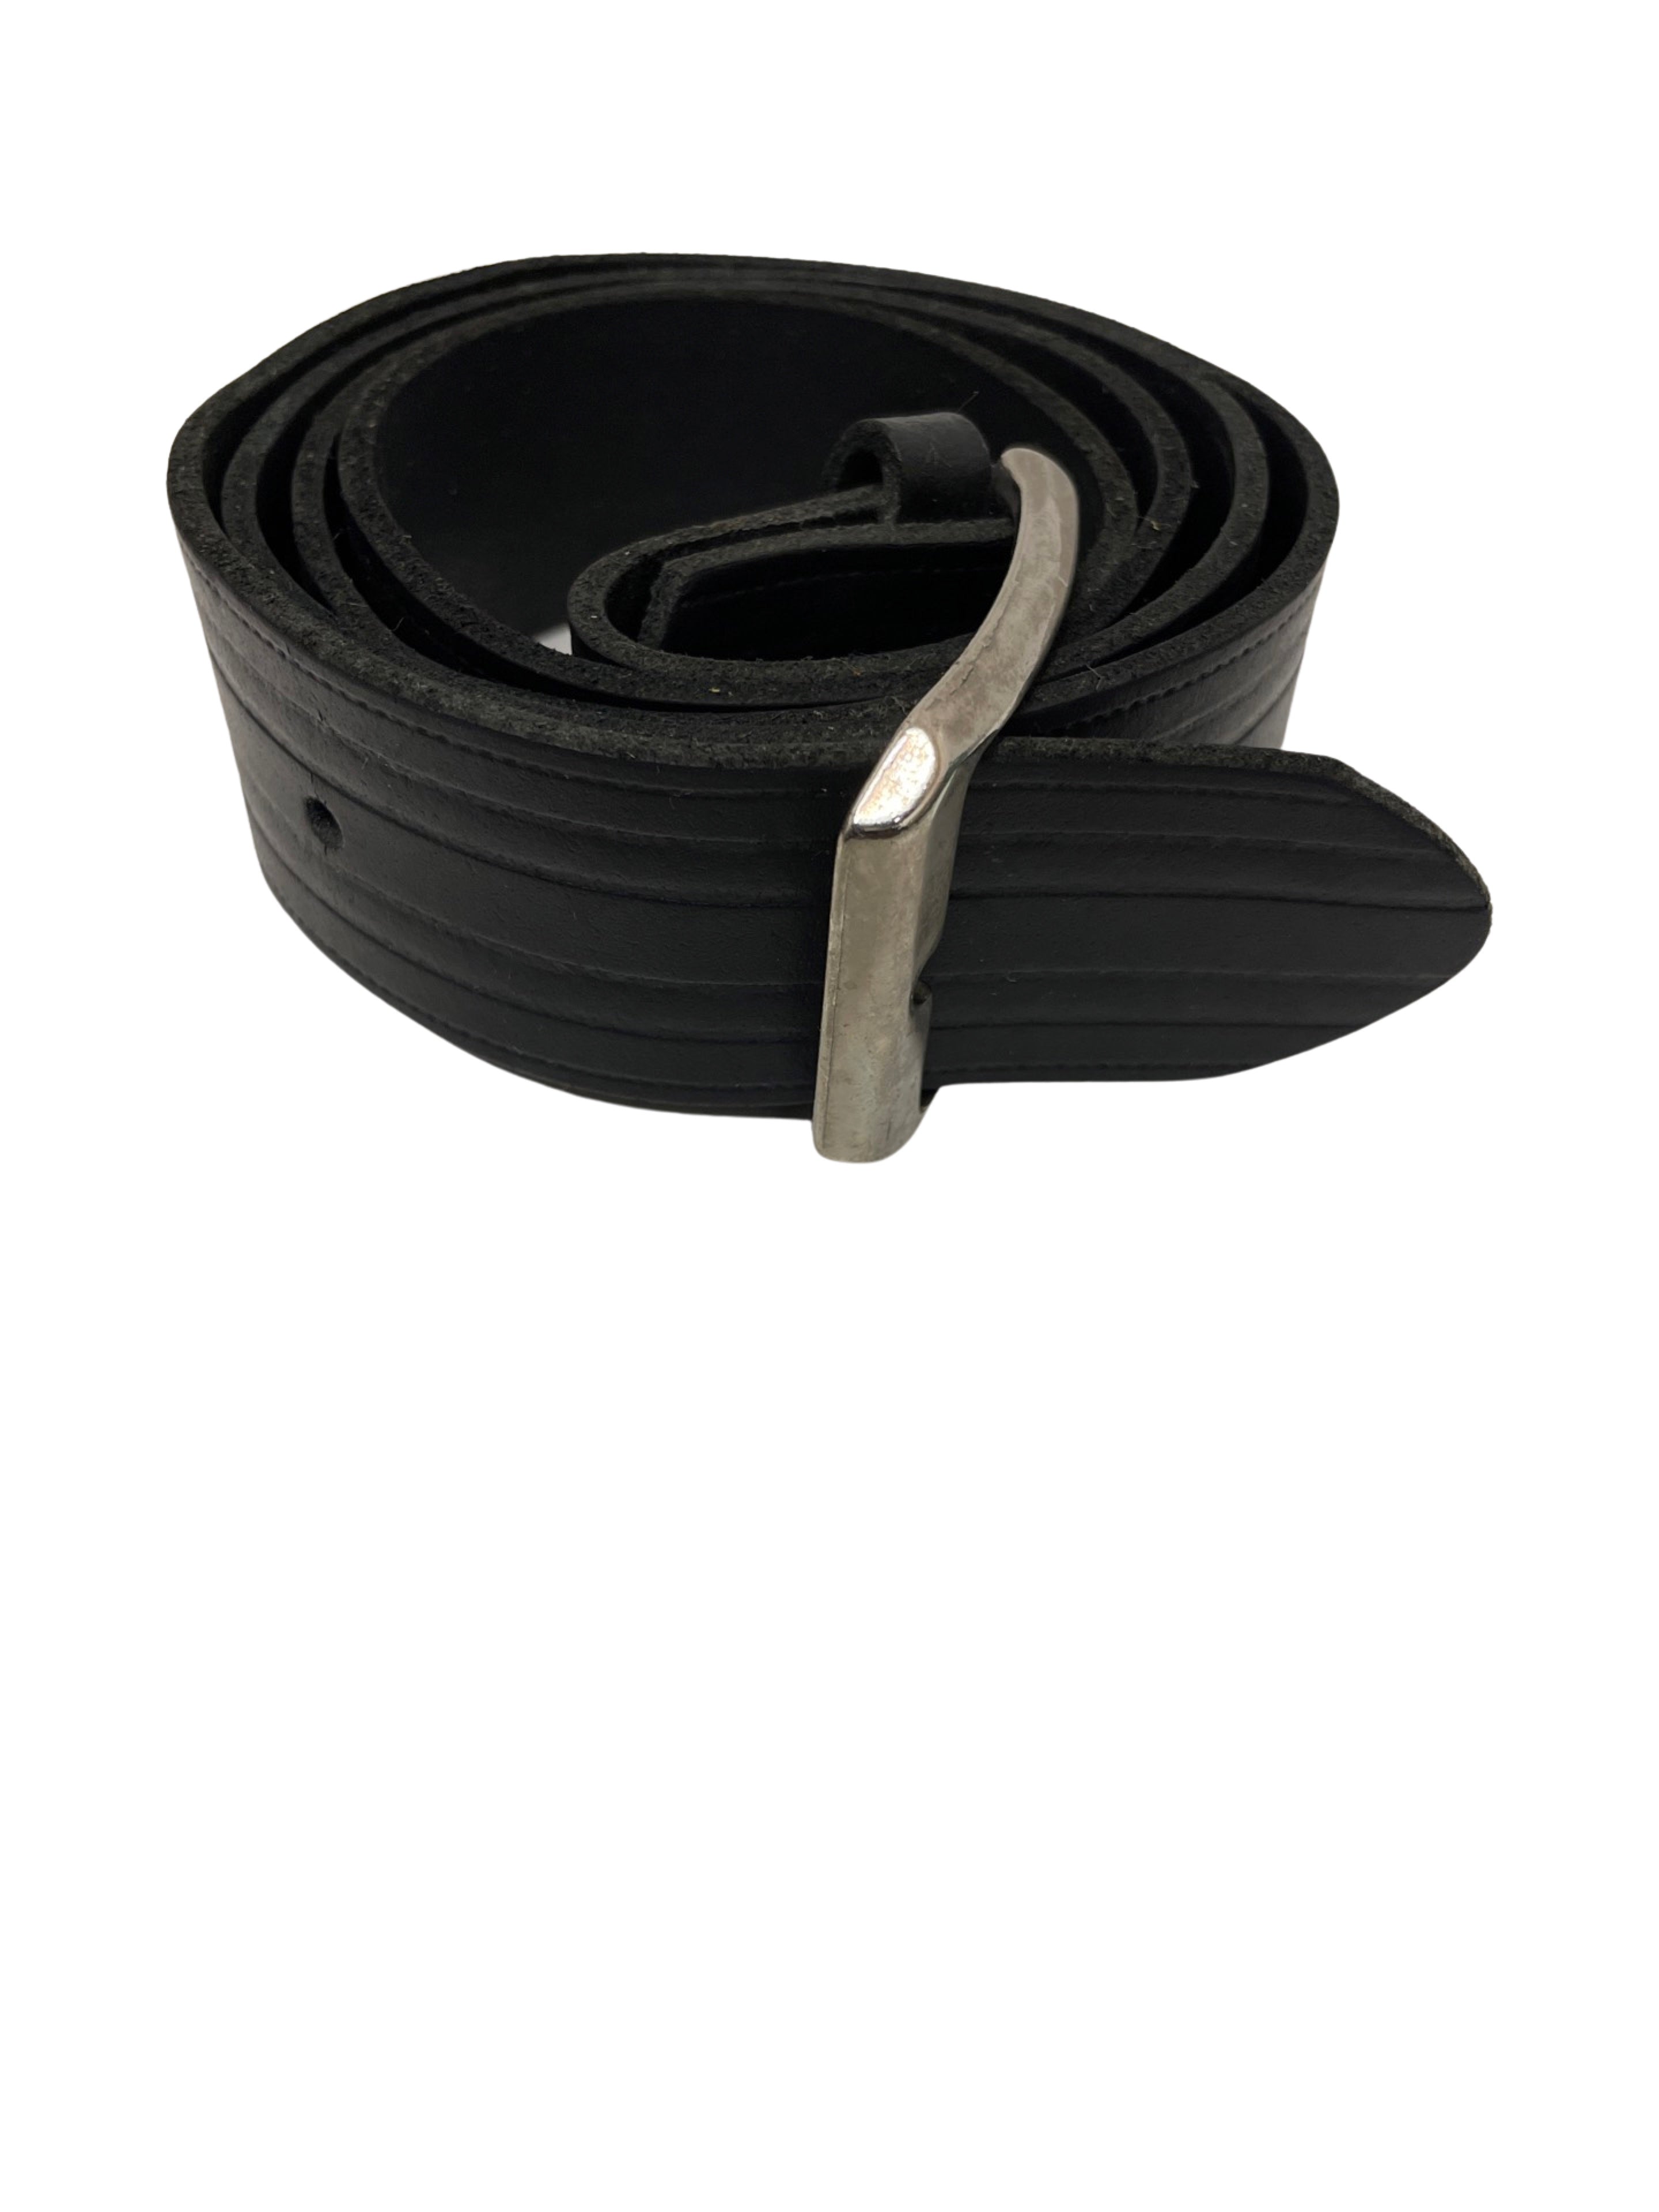 Vintage mens black leather squared buckle belt